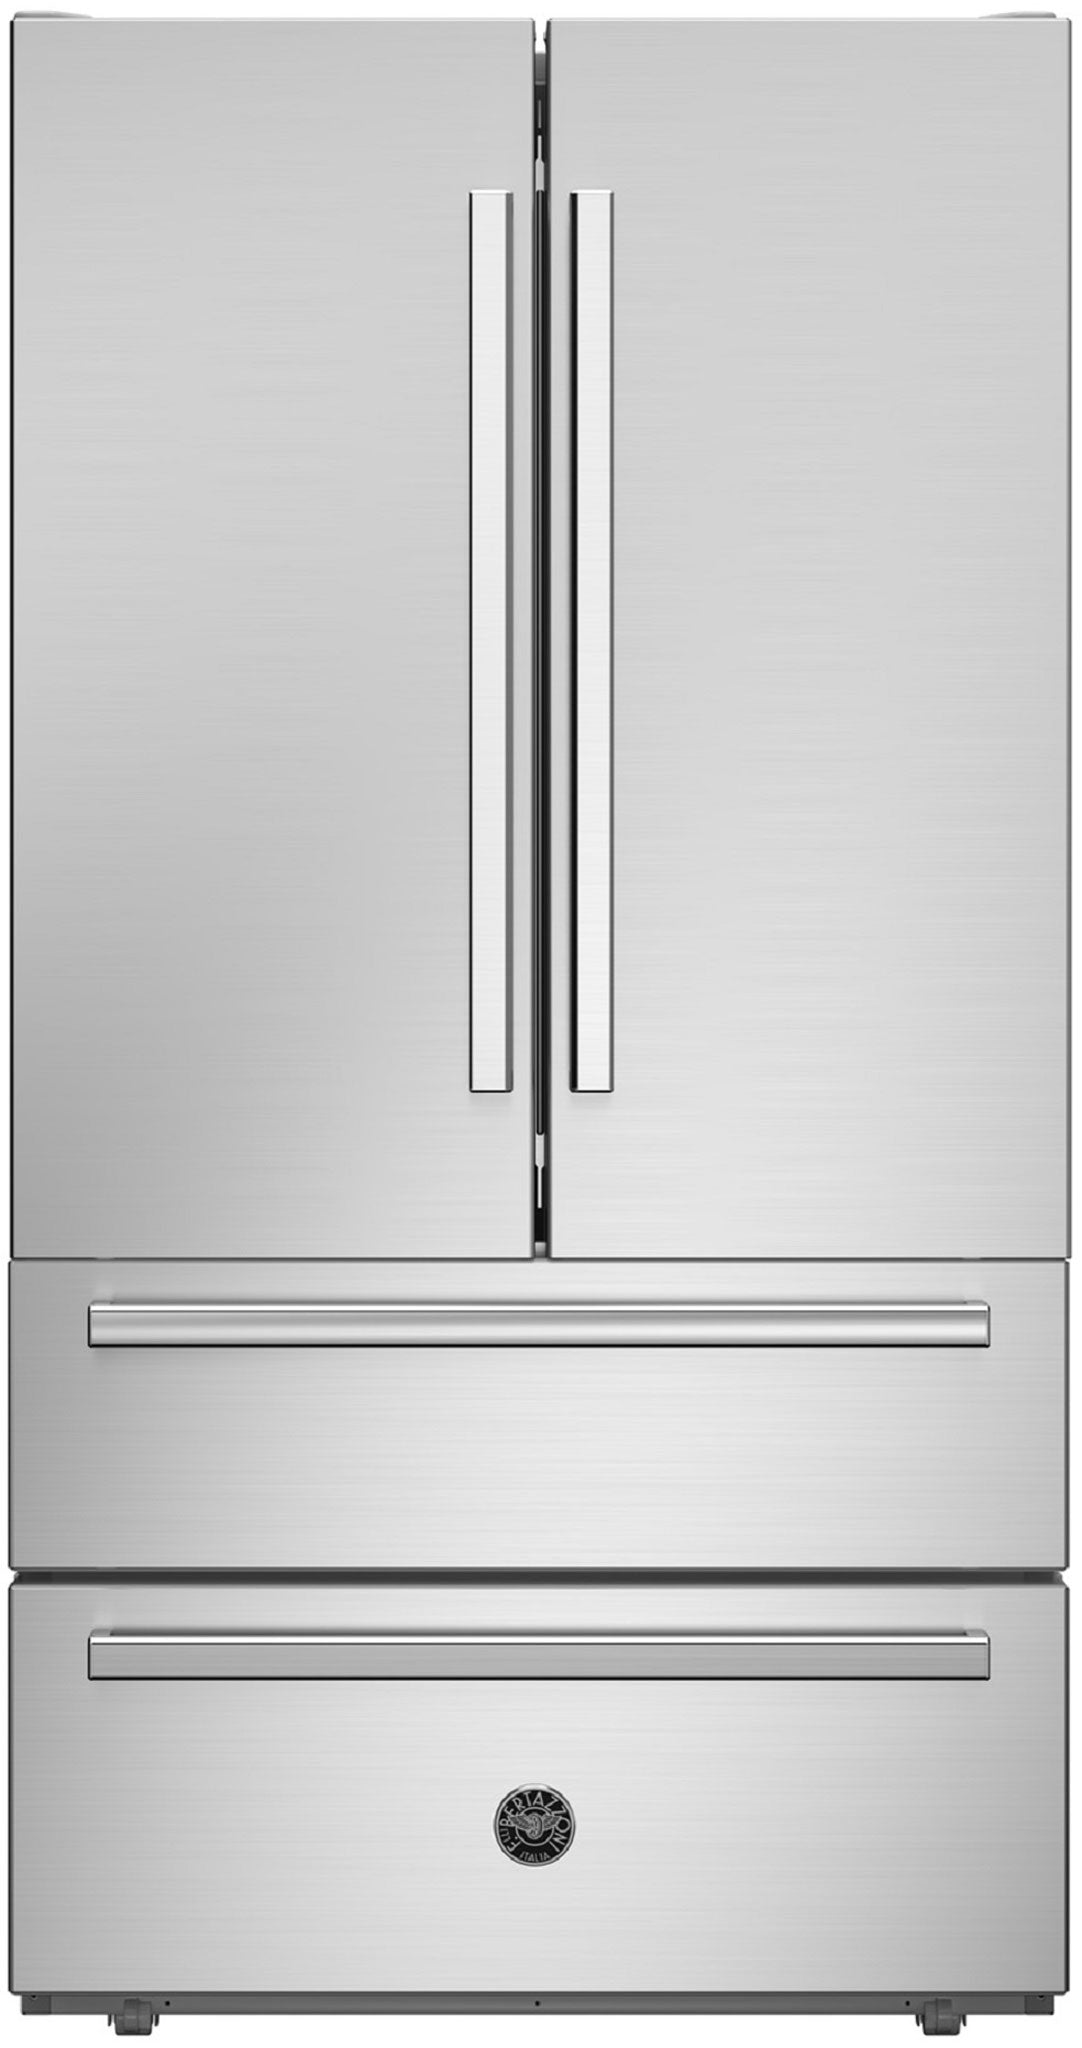 BERTAZZONI REF904FFNXTC 90cm Total No Frost Free Standing French Door Fridge Freezer in Stainless Steel